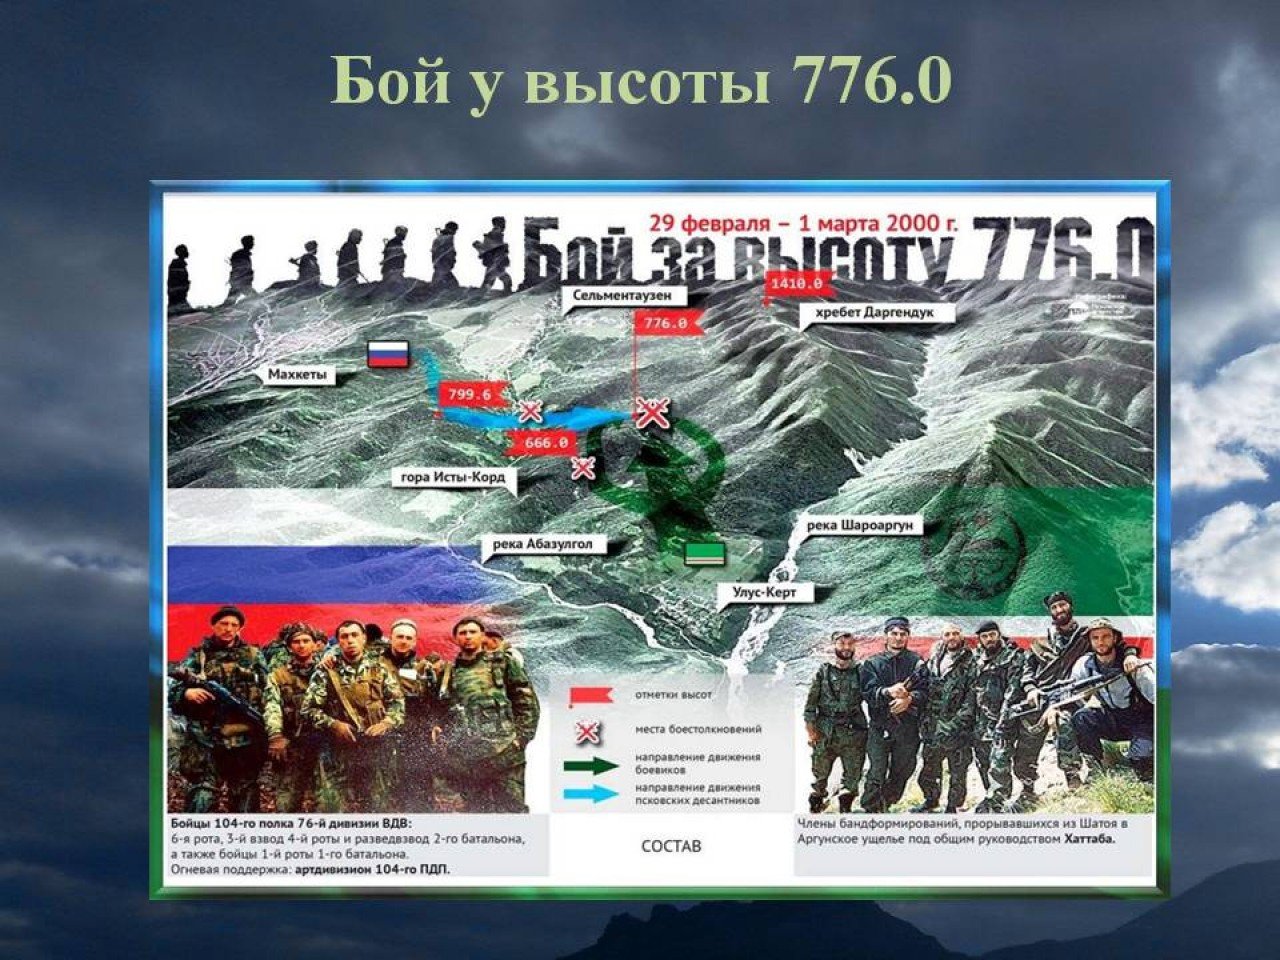 6 рота 104 полка псковской